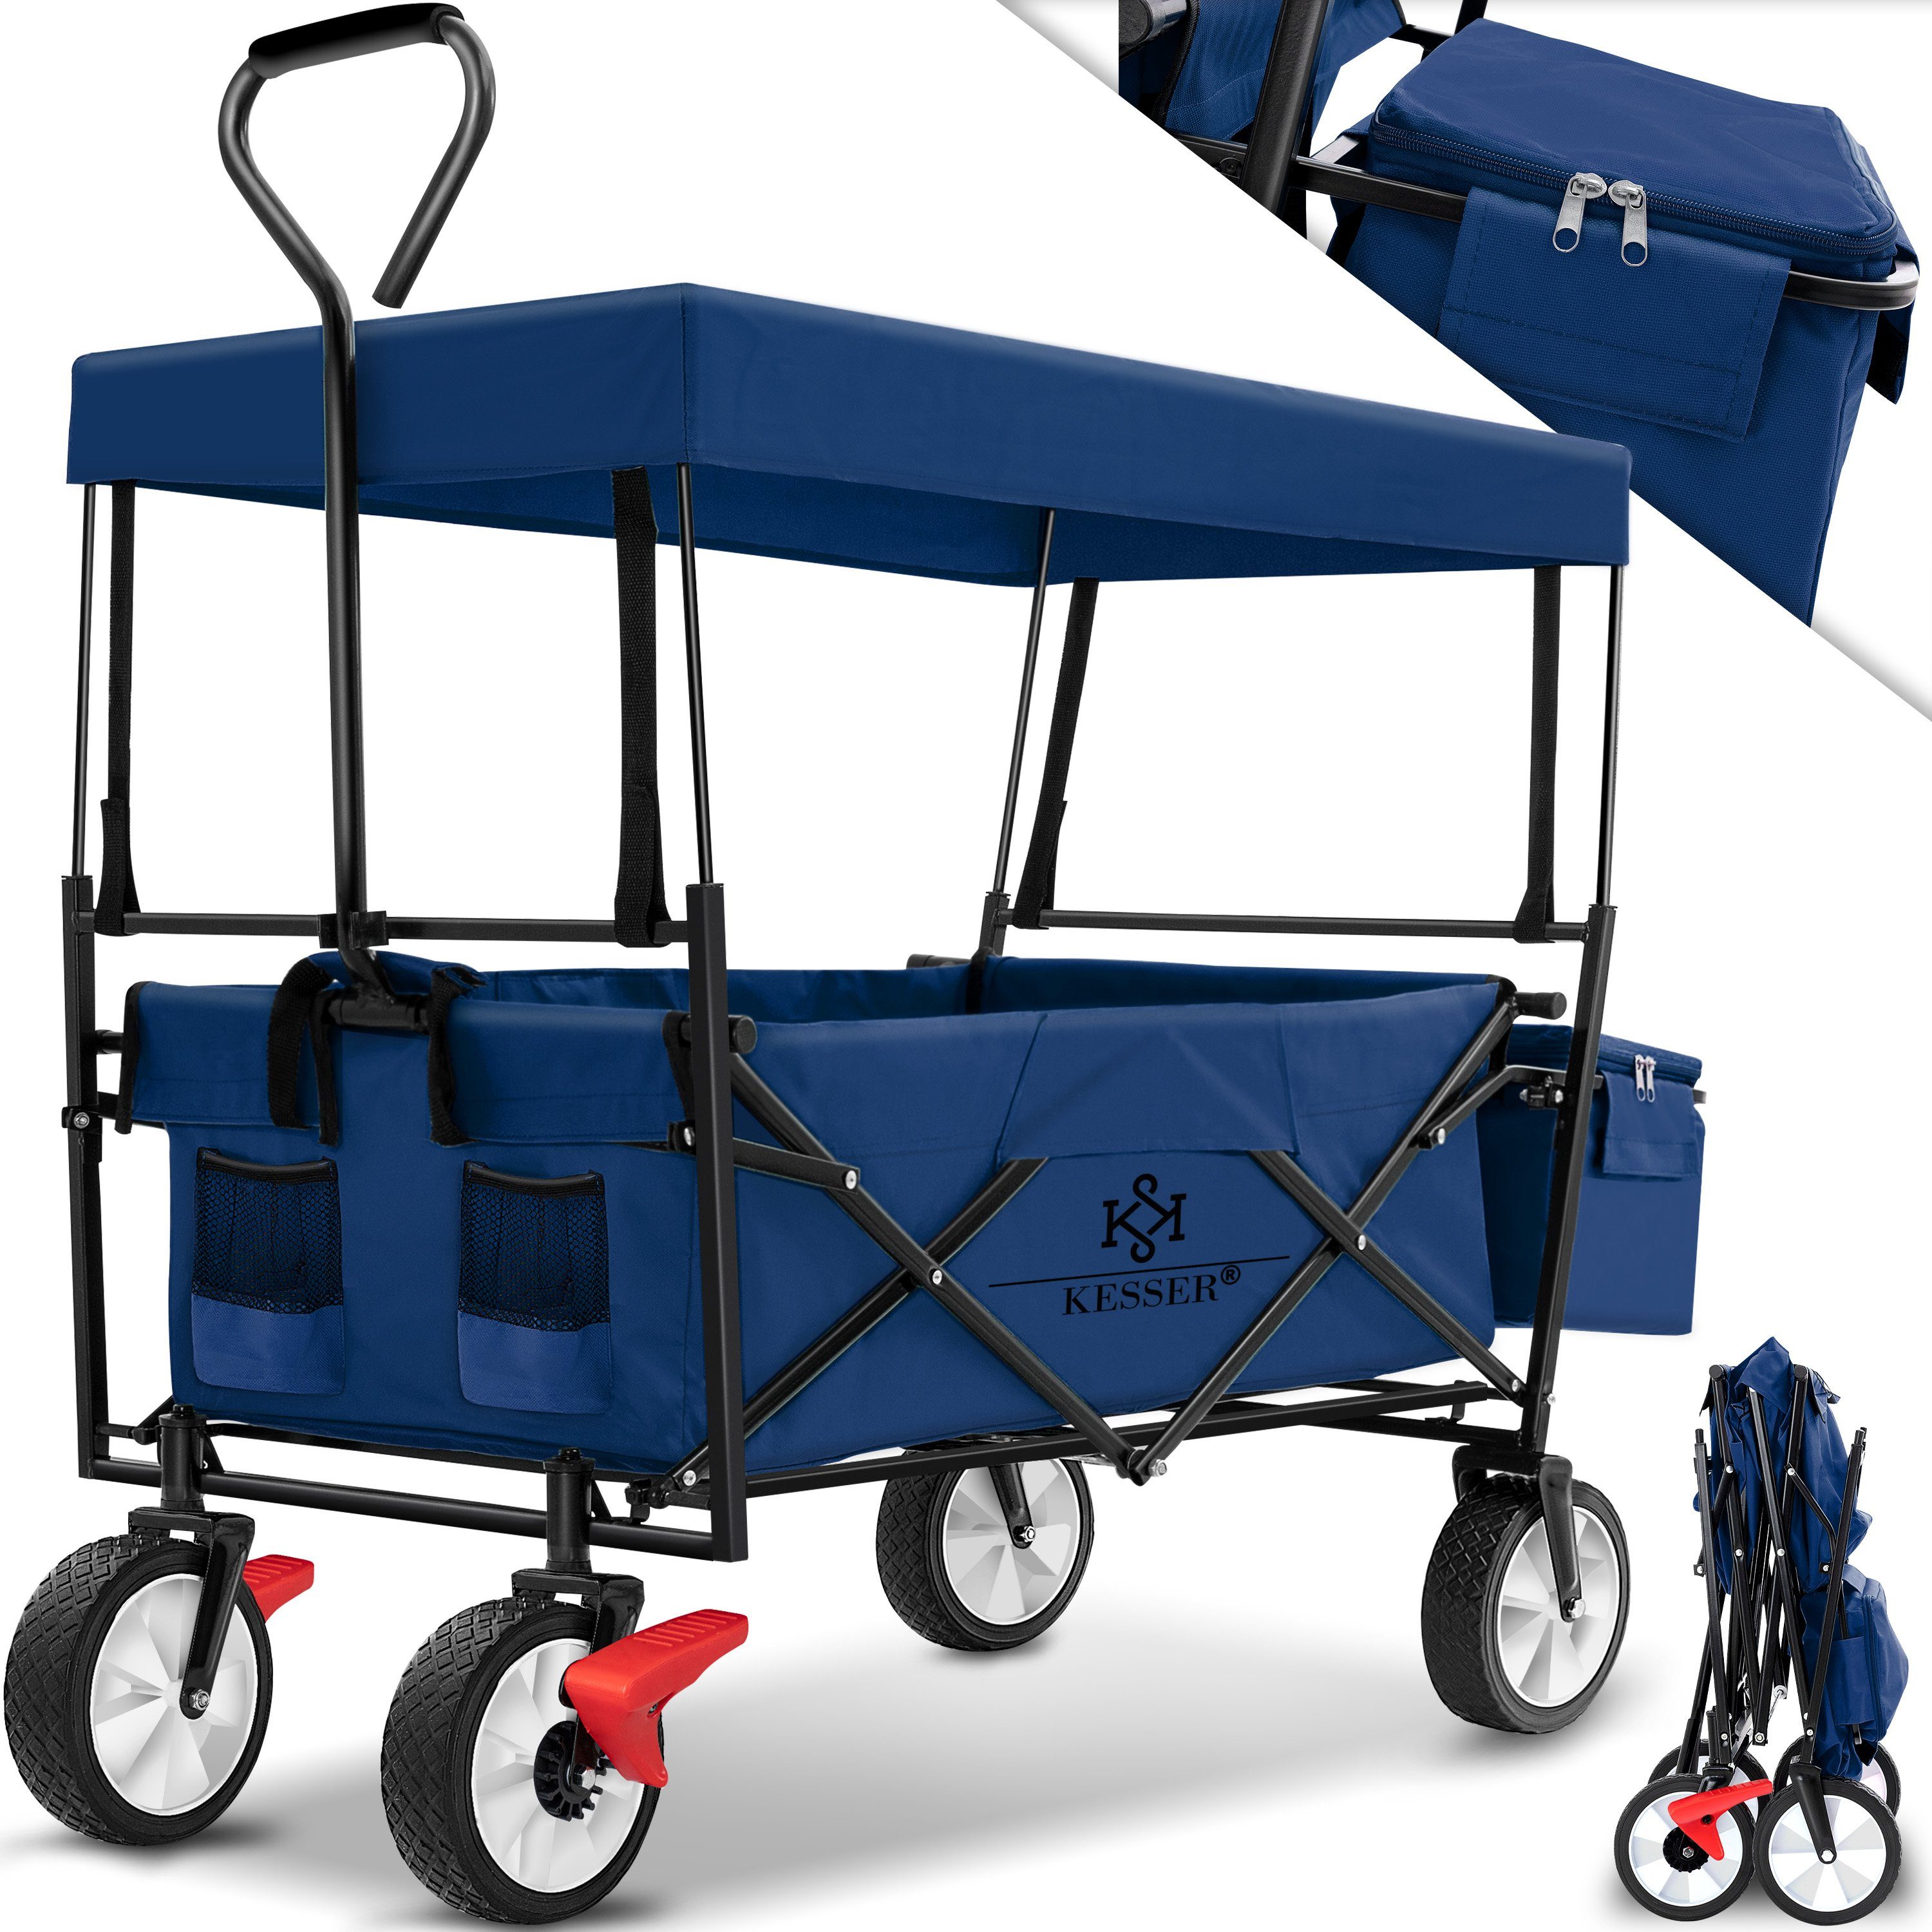 KESSER Bollerwagen, Bollerwagen faltbar mit Dach Handwagen Transportkarre Geräte blau/navy